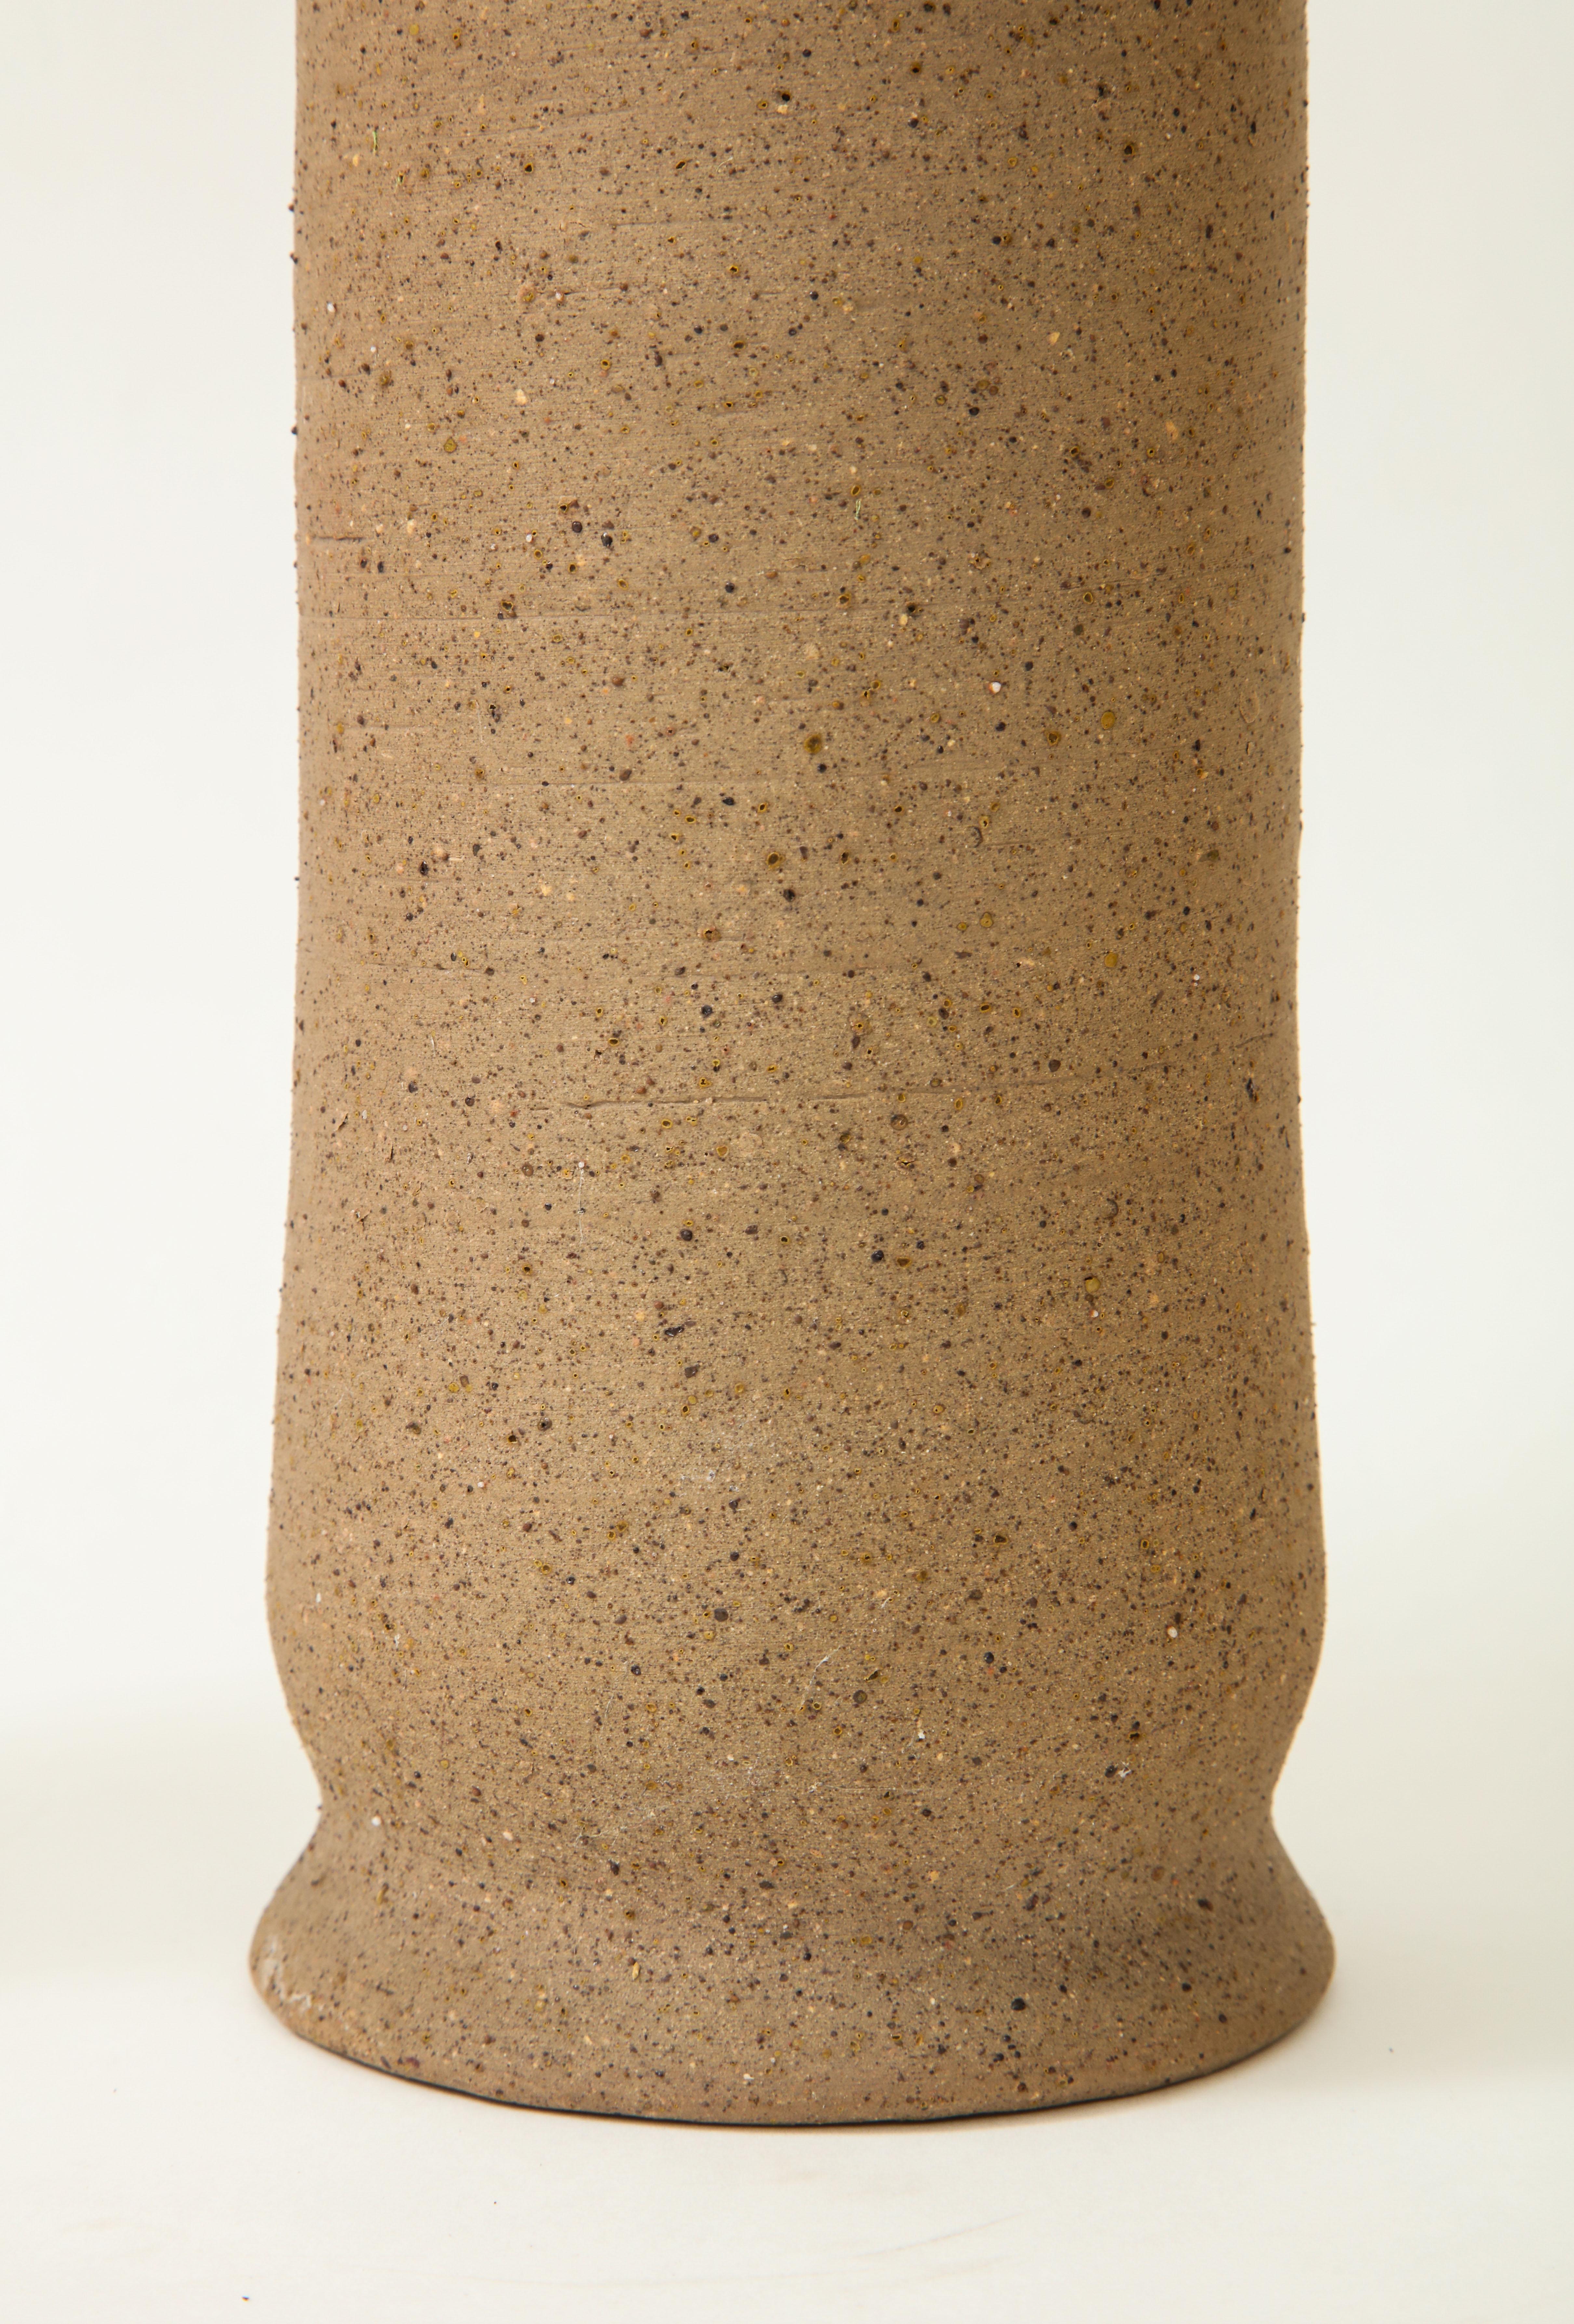 Bruno Gambone Set of 3 Ceramic Vases 4